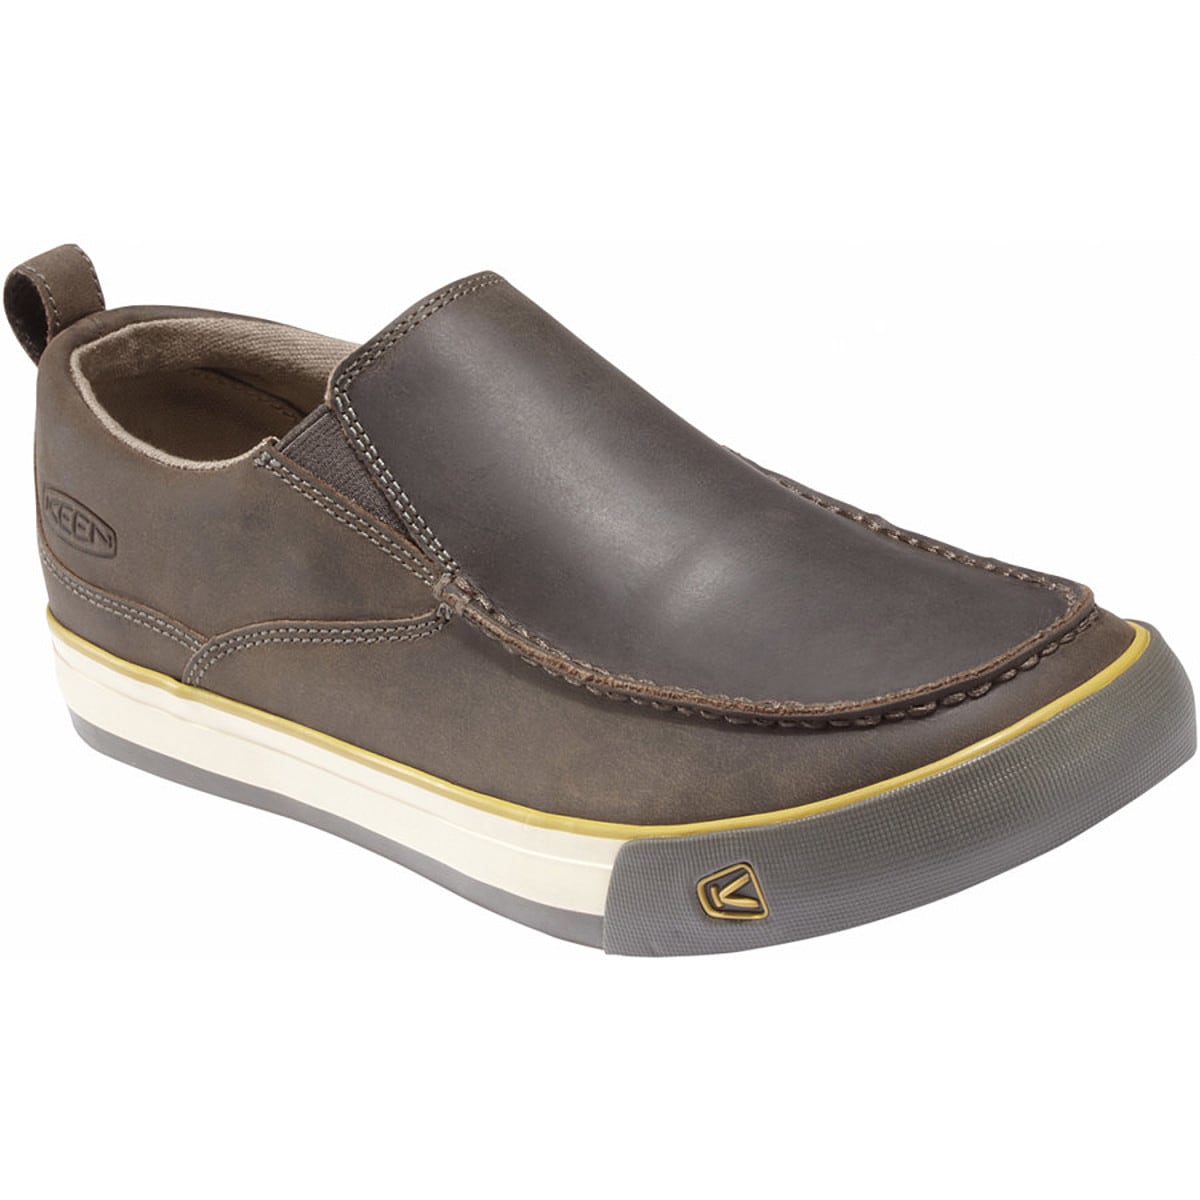 KEEN Timmons Slip-On Shoe - Men's - Footwear